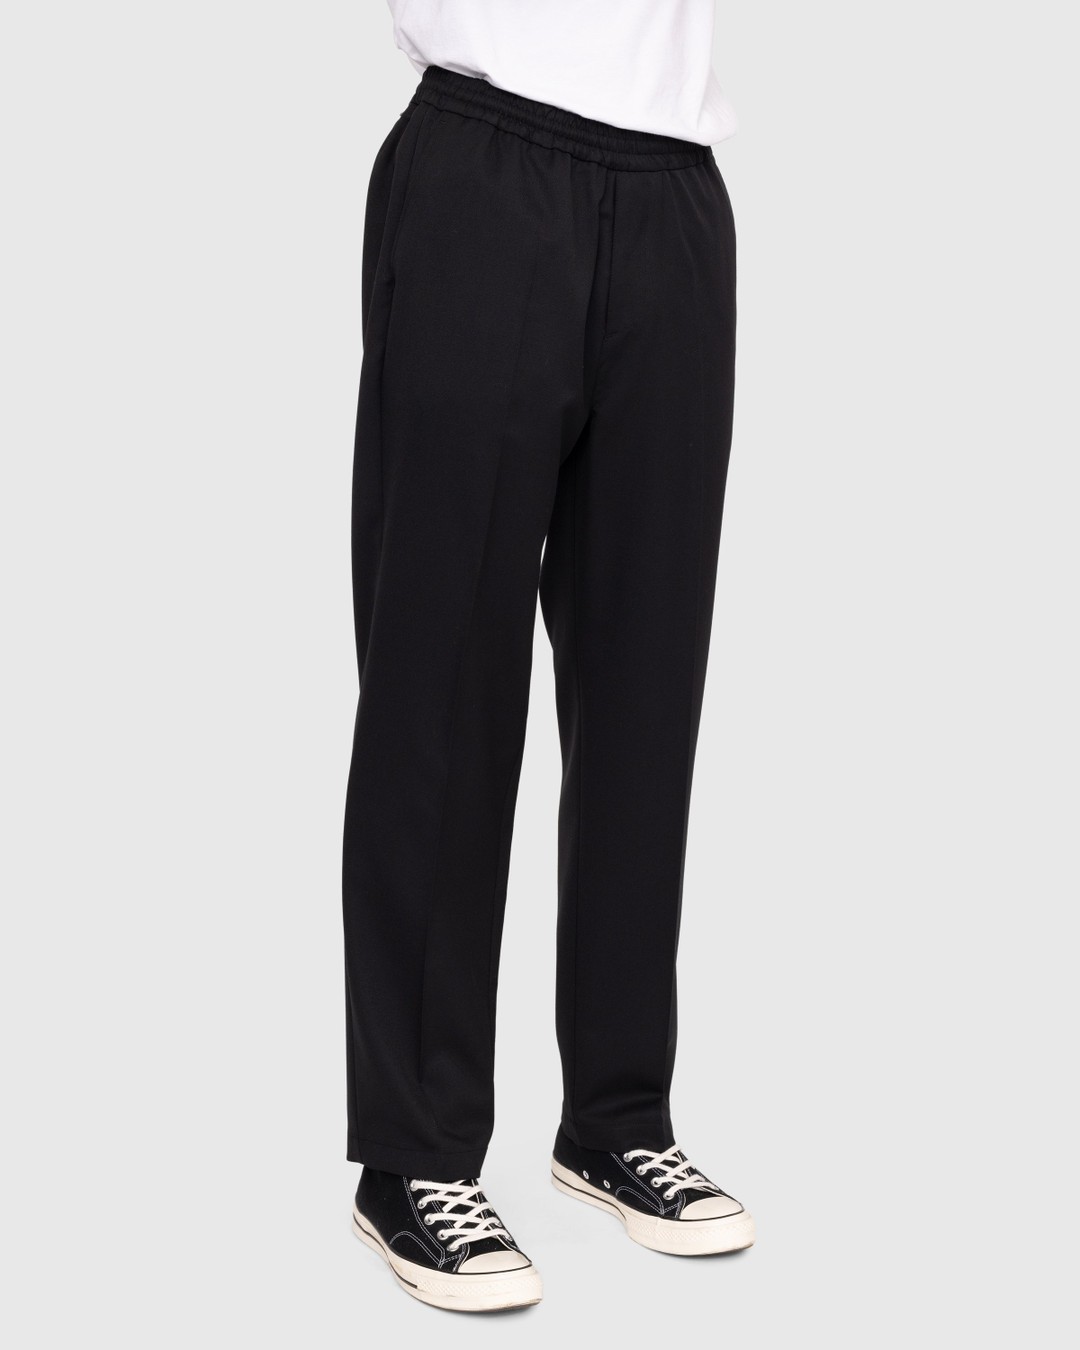 Highsnobiety – Wool Blend Elastic Pants Black - Pants - Black - Image 3